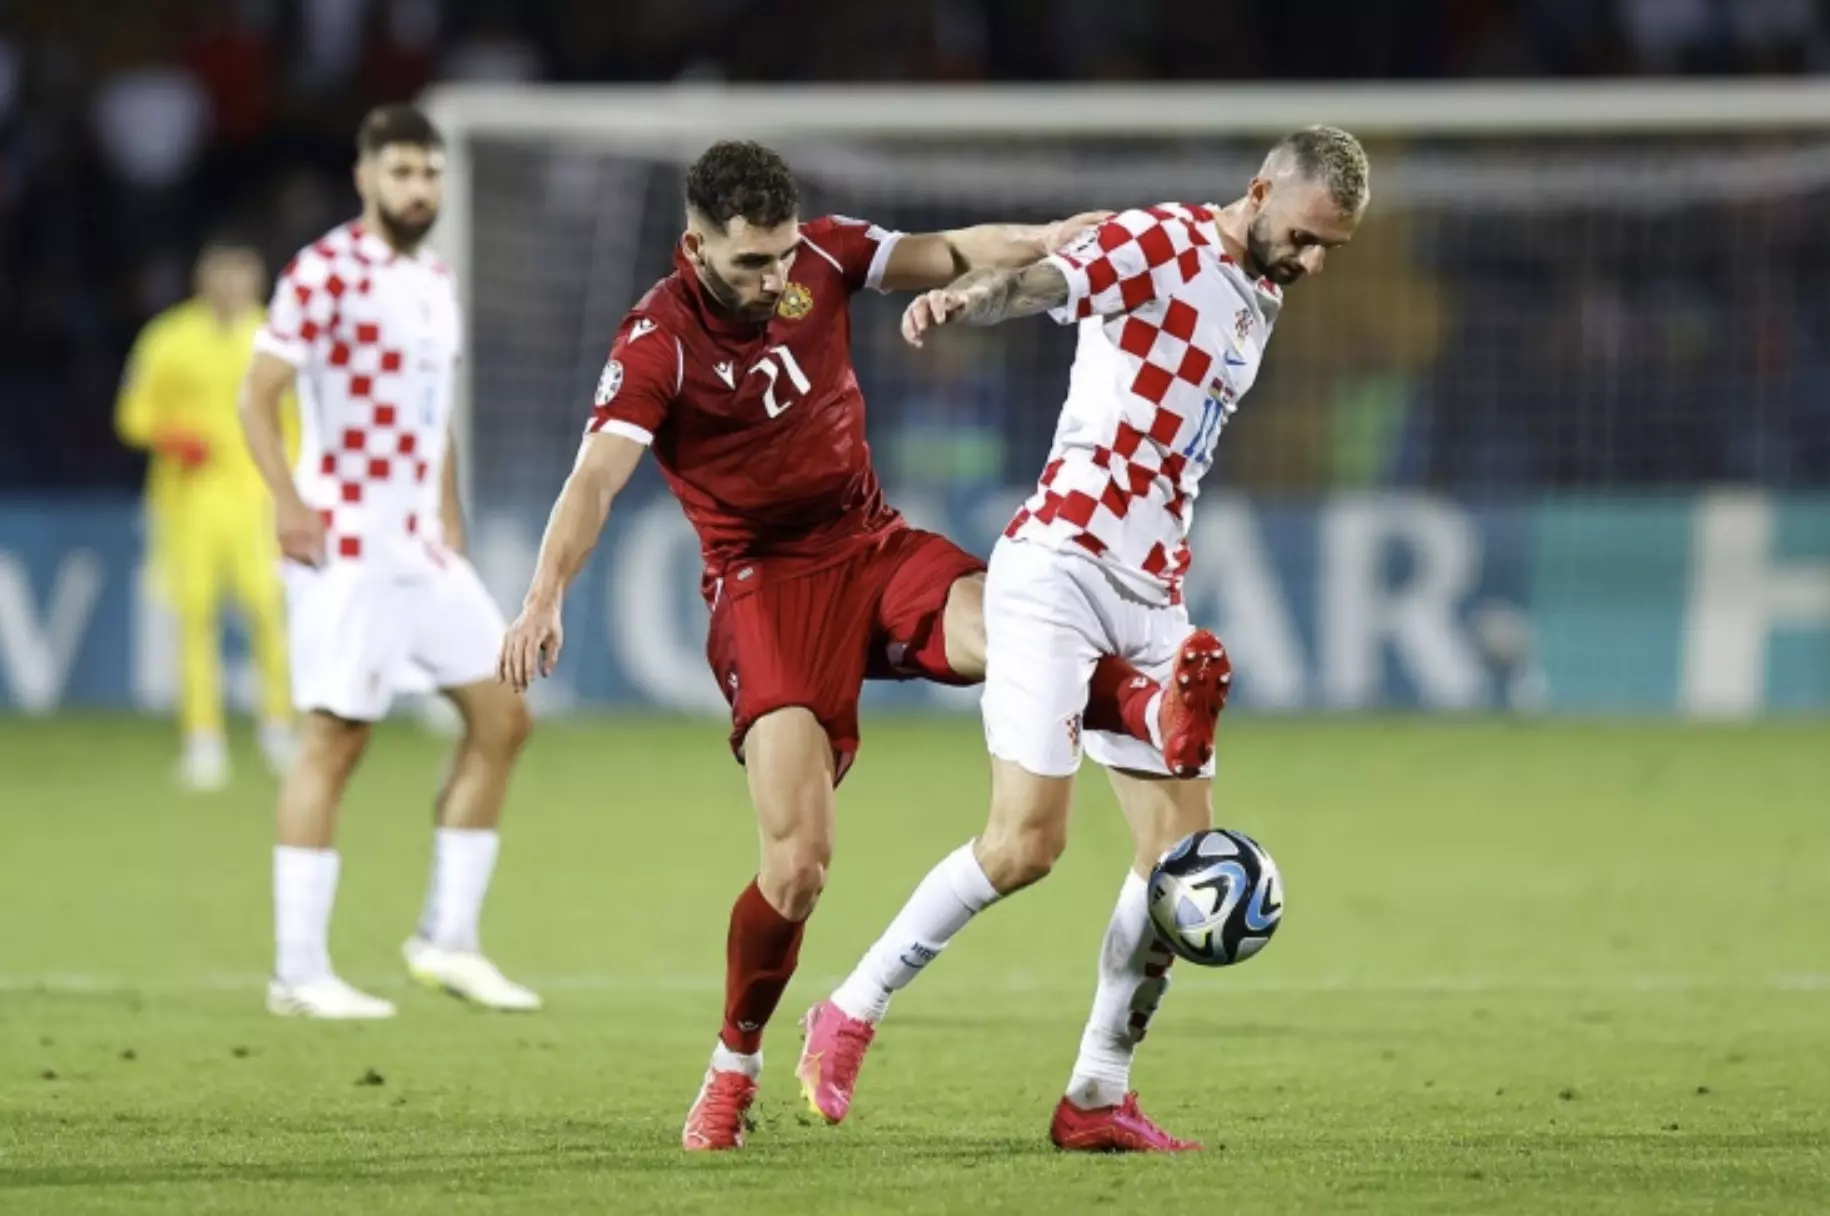 ❗УЕФА возбудила дисциплинарное дело против Федерации футбола Армении и Хорватии